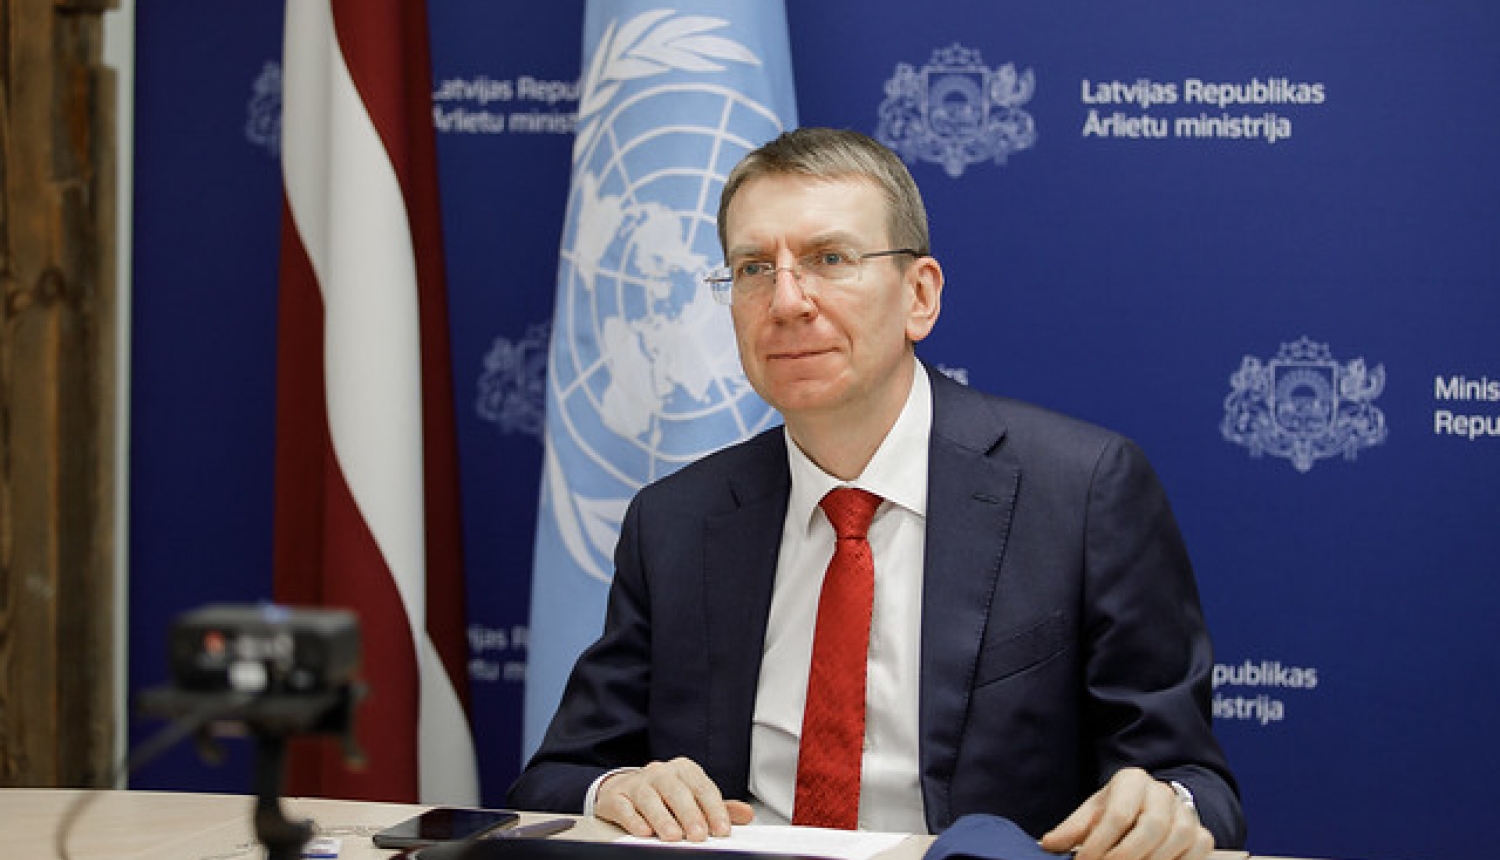 E. Rinkēvičs aicina ANO izmeklēt žurnālistu vajāšanas Baltkrievijā